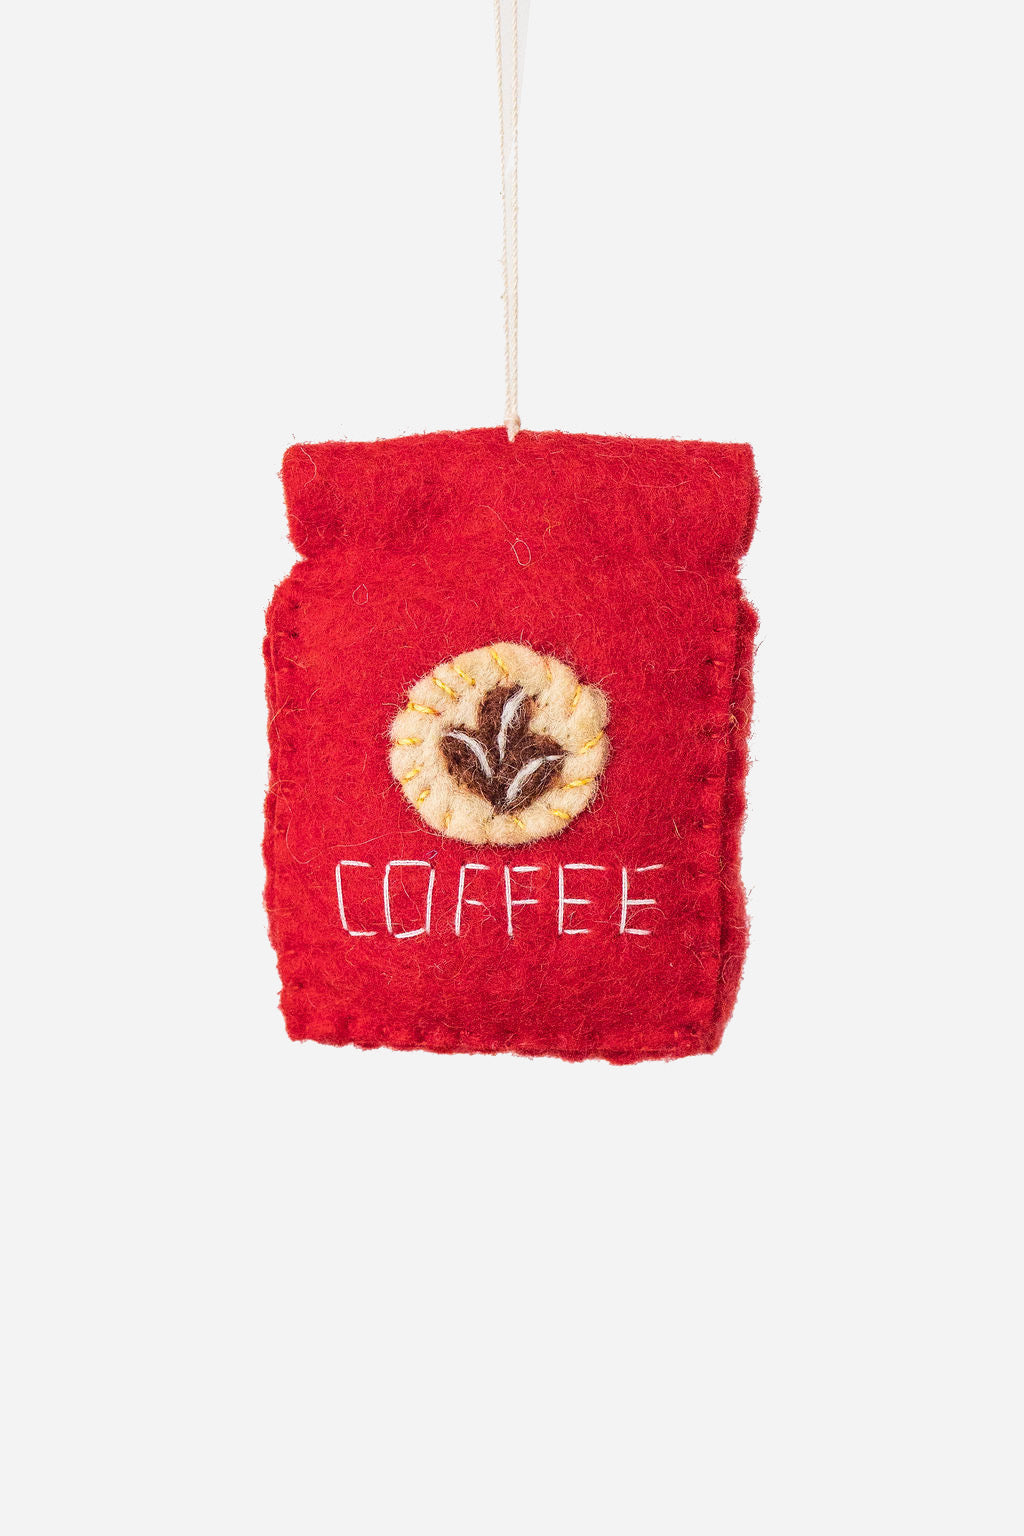 Coffee Ornament 